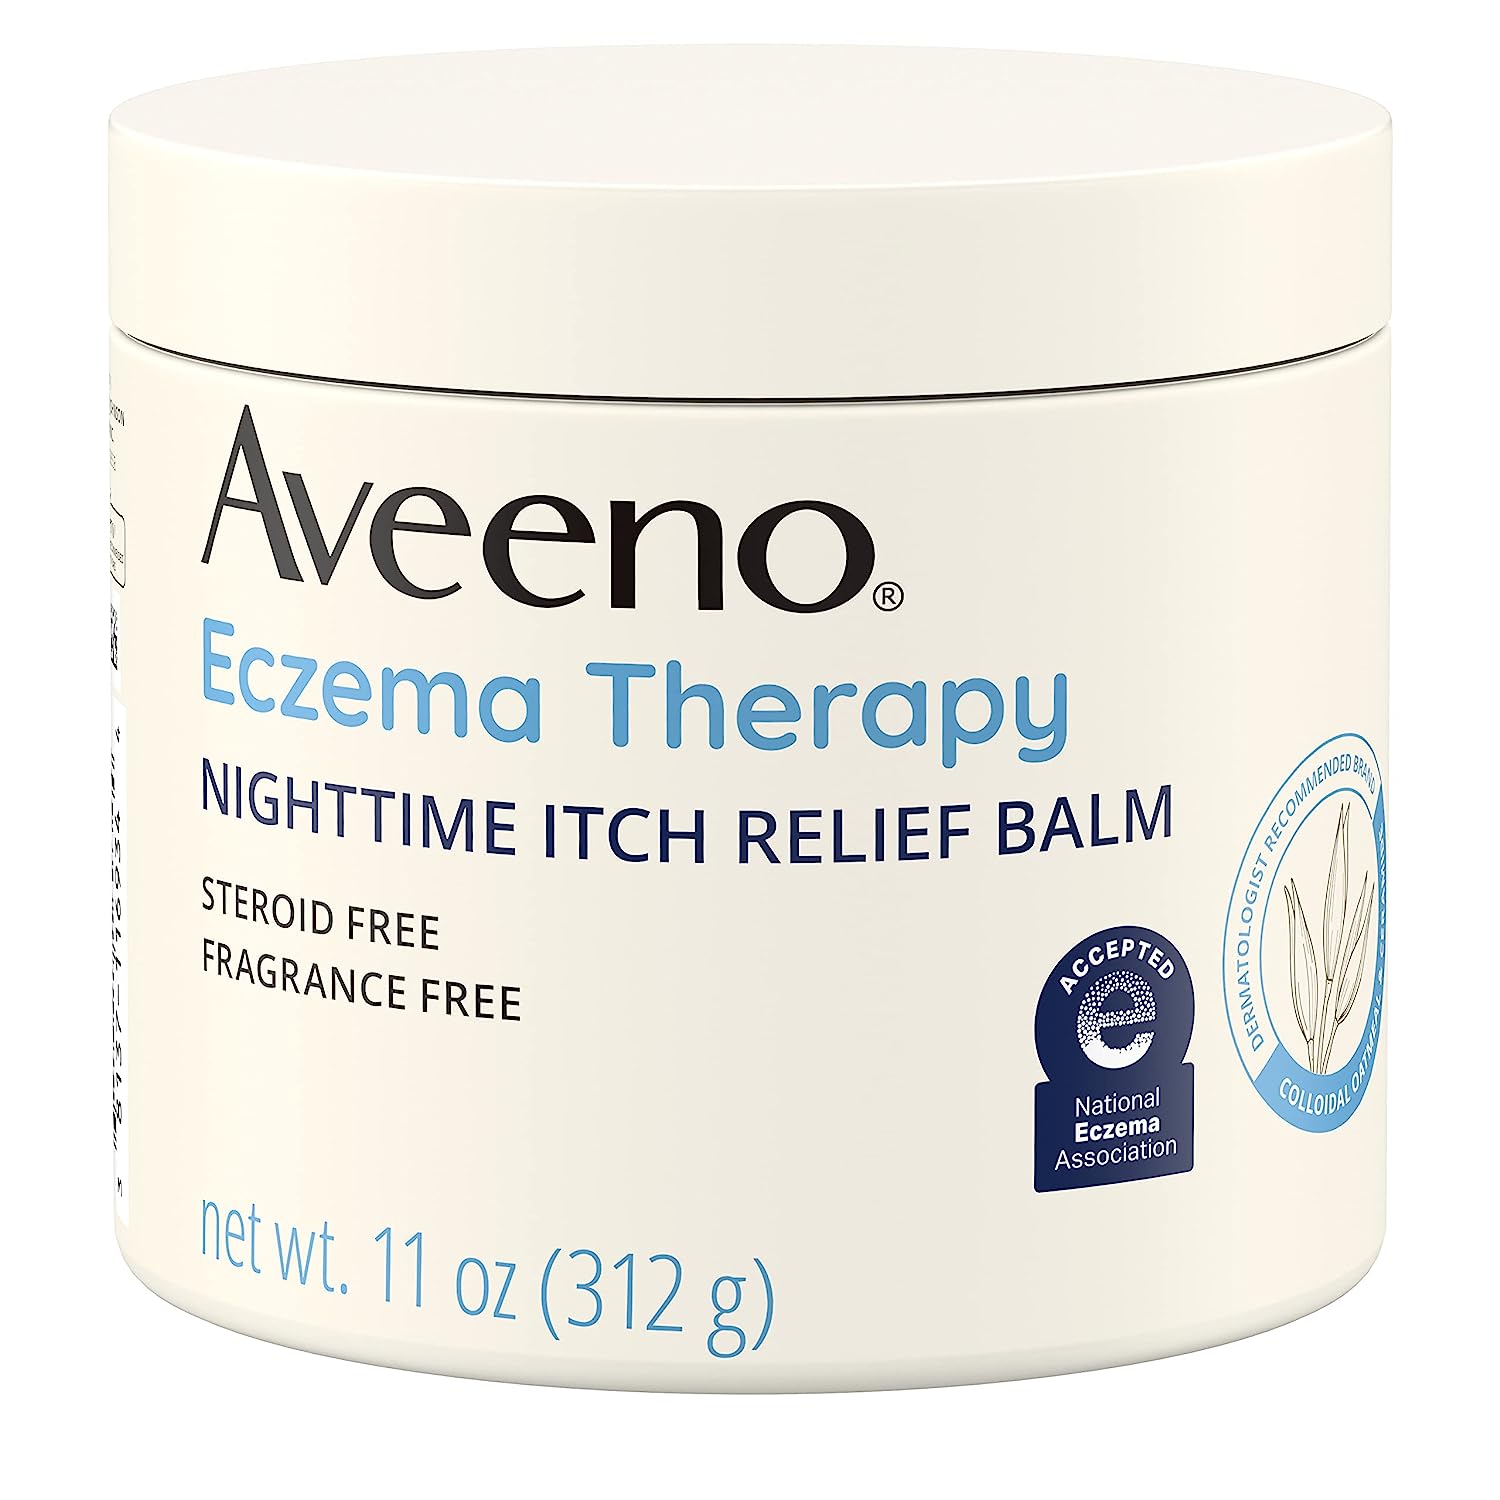 Aveeno Eczema Therapy Night Time Itch Relief Balm - 11oz/12pk